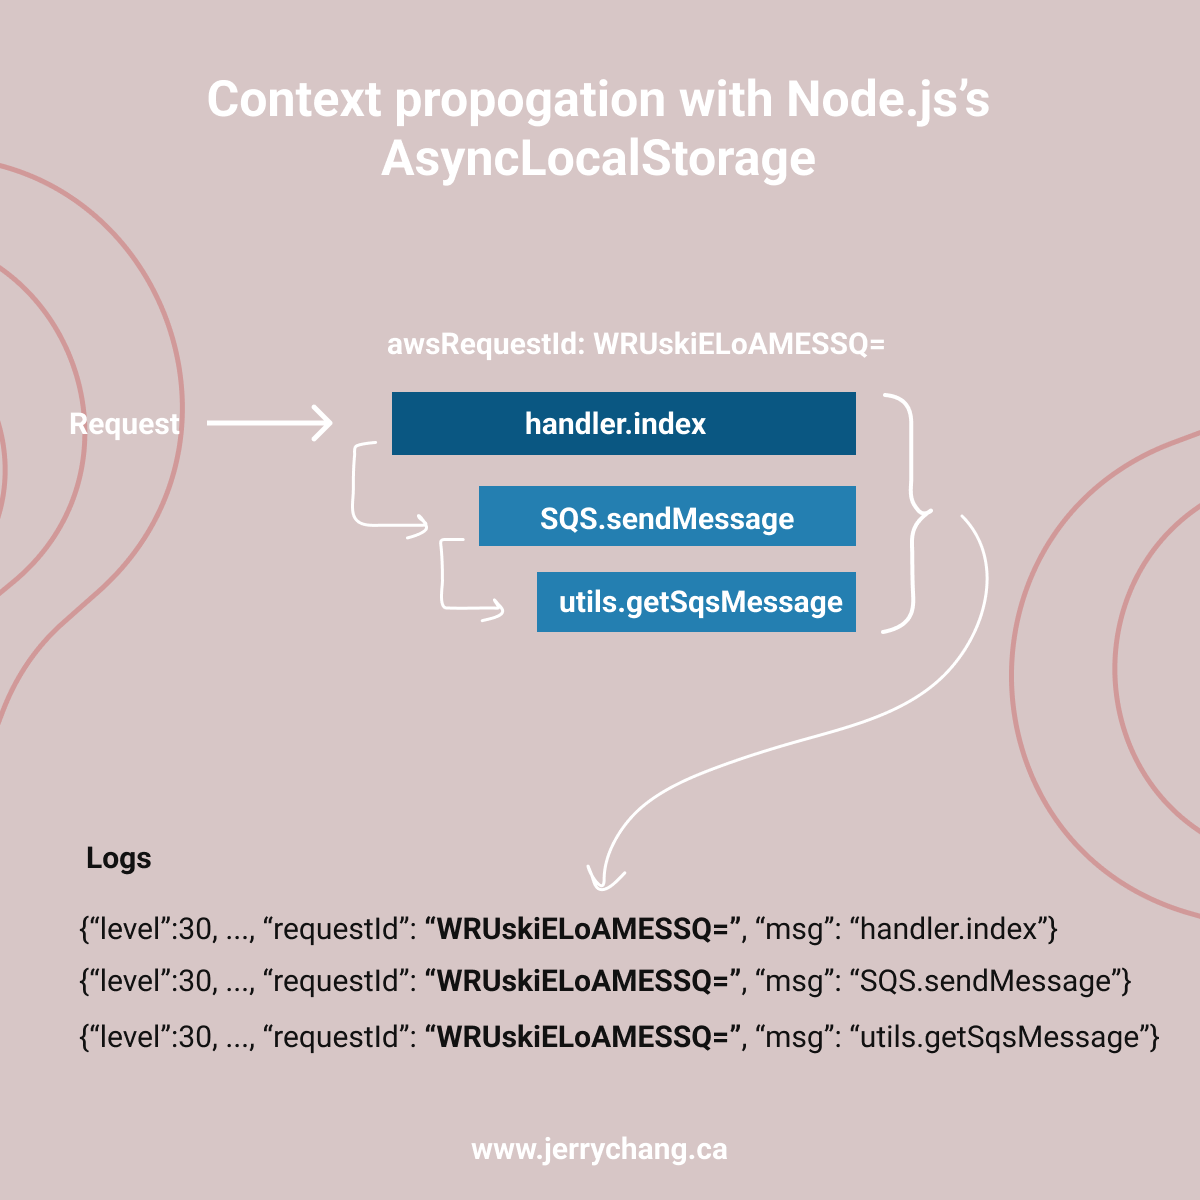 Node.js AsyncLocalStorage used for logging